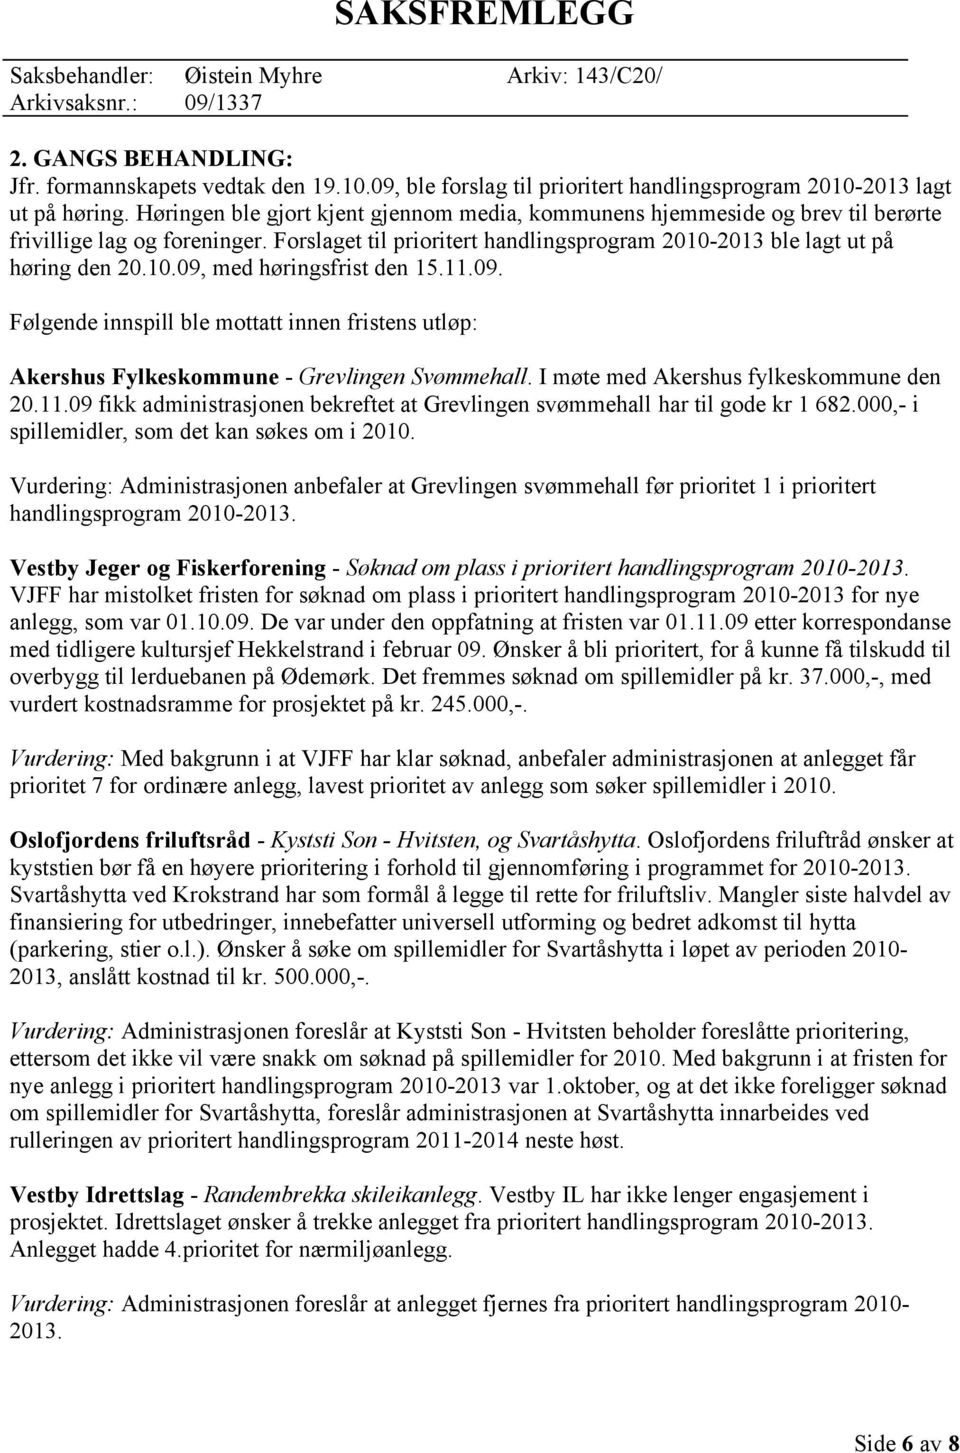 11.09. Følgende innspill ble mottatt innen fristens utløp: Akershus Fylkeskommune - Grevlingen Svømmehall. I møte med Akershus fylkeskommune den 20.11.09 fikk administrasjonen bekreftet at Grevlingen svømmehall har til gode kr 1 682.